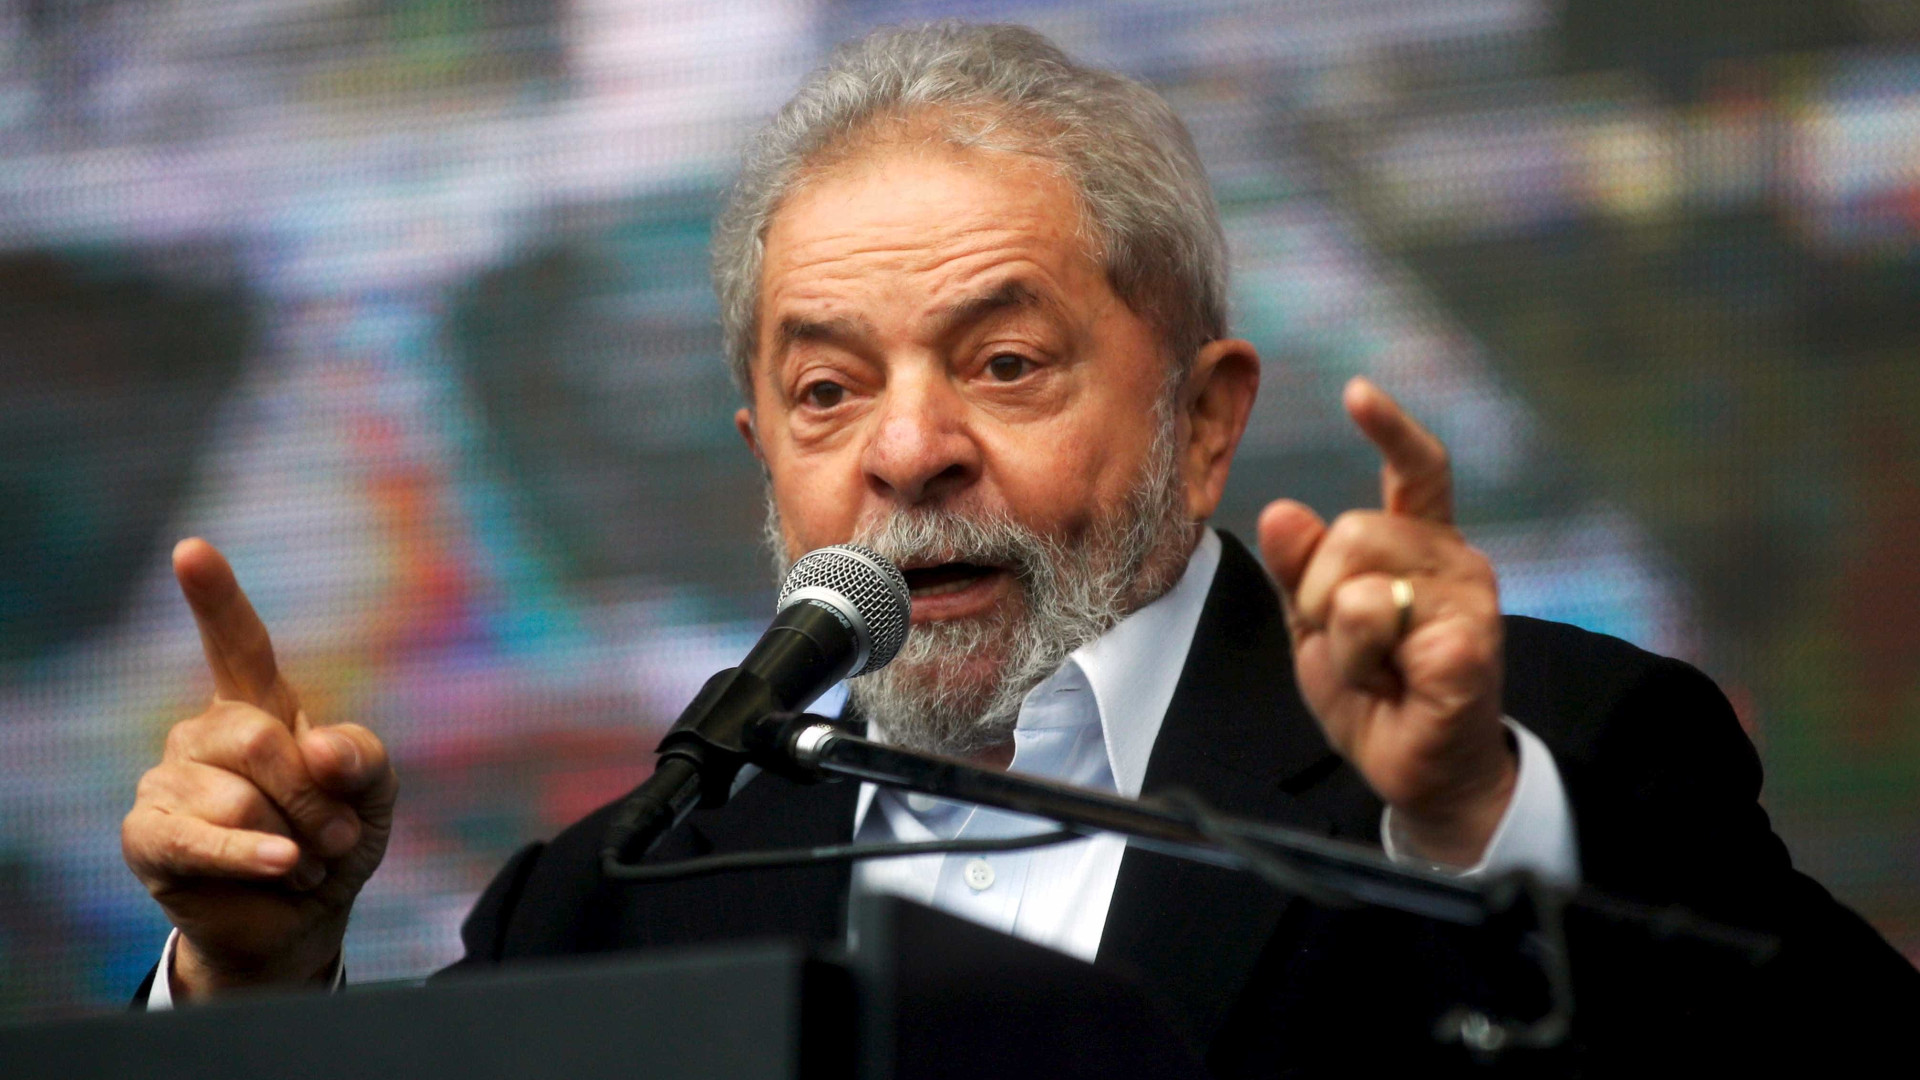 MPF tem “extremado apego” à investigação, diz defesa de Lula